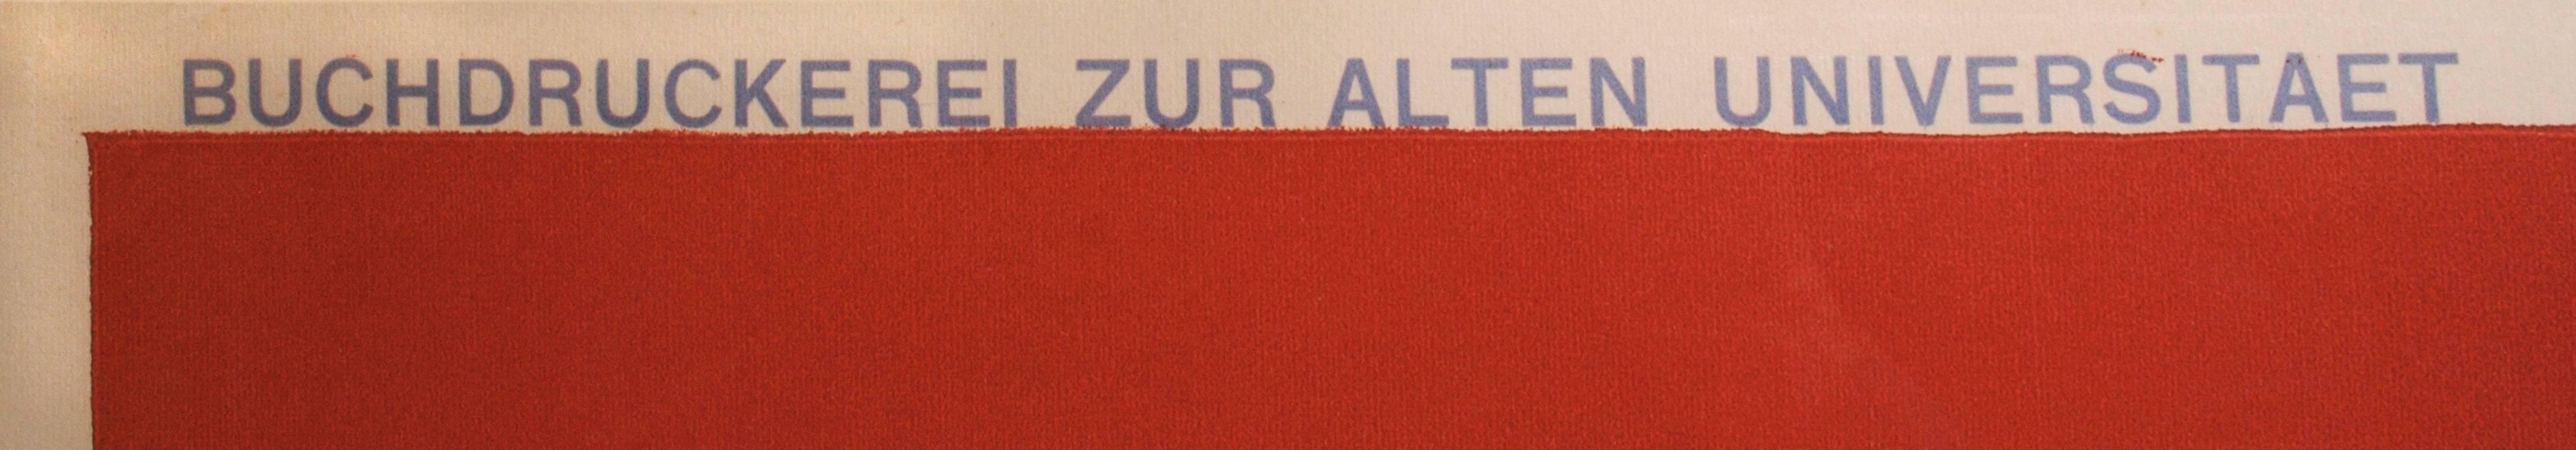 Das Neue Heim, A Swiss letterpress poster advertising 